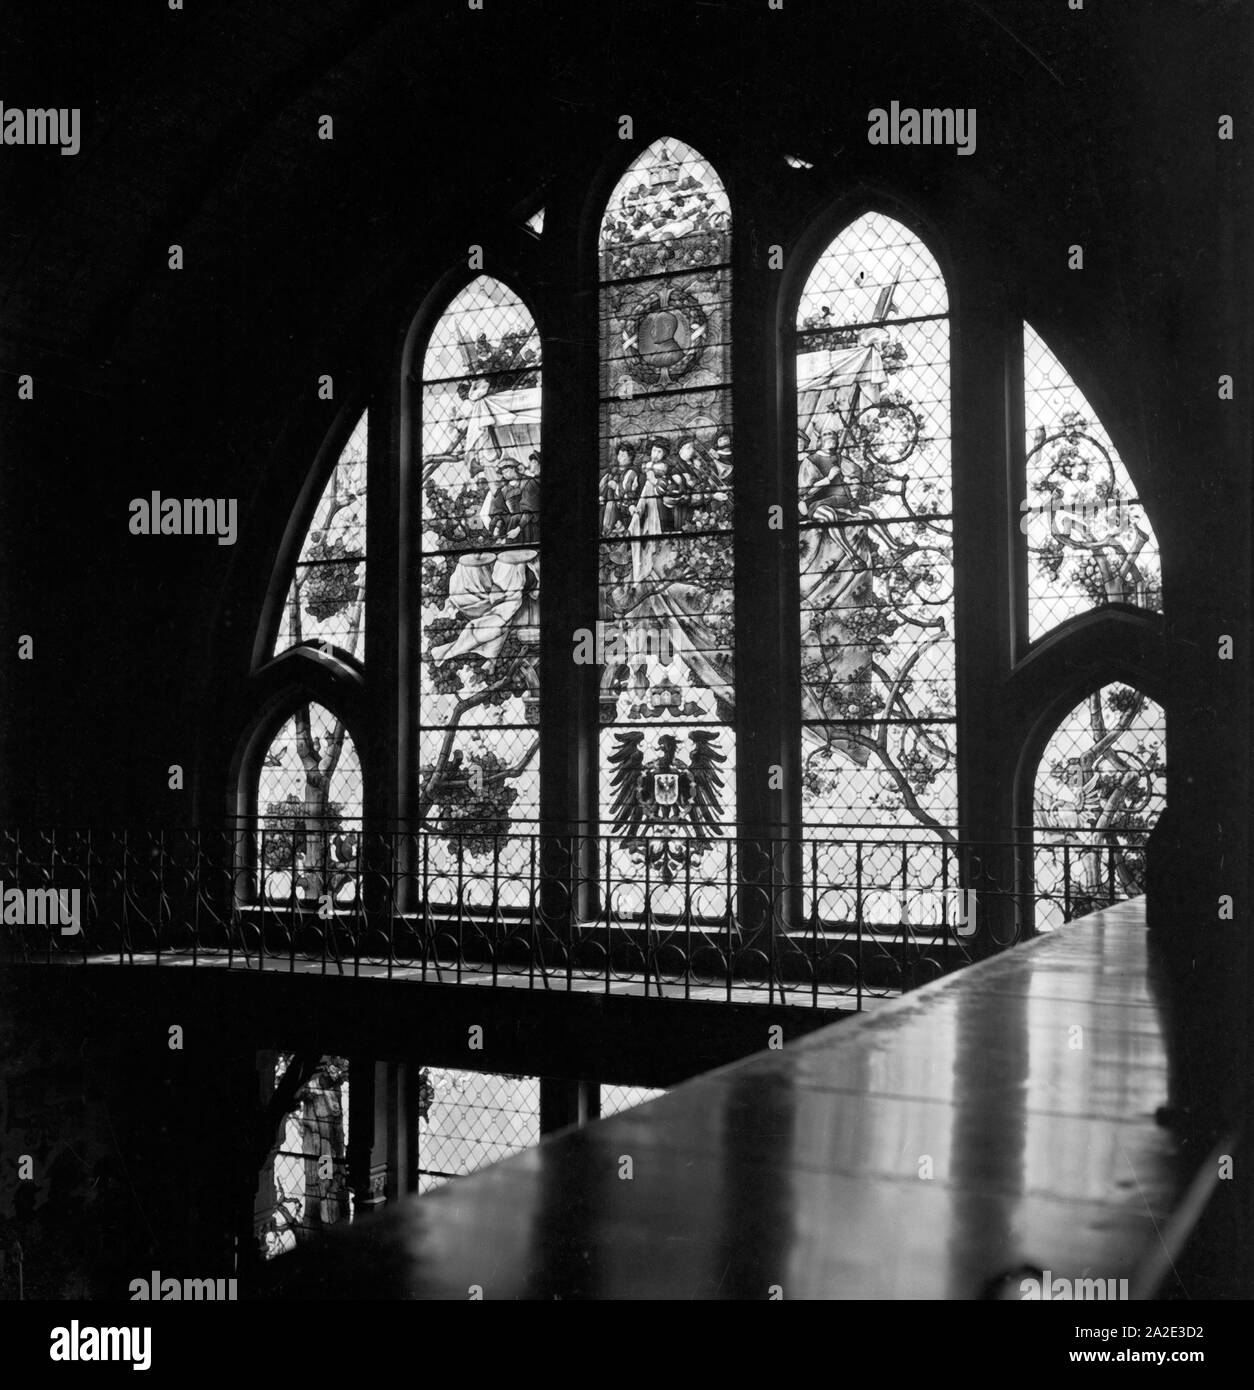 Fenster mit Wappen und Allegorien im Rathaus von Hildesheim, Deutschland 1930er Jahre. Mit Wappen und Allegorien Fenster im Rathaus der Stadt Hildesheim, Deutschland 1930. Stockfoto